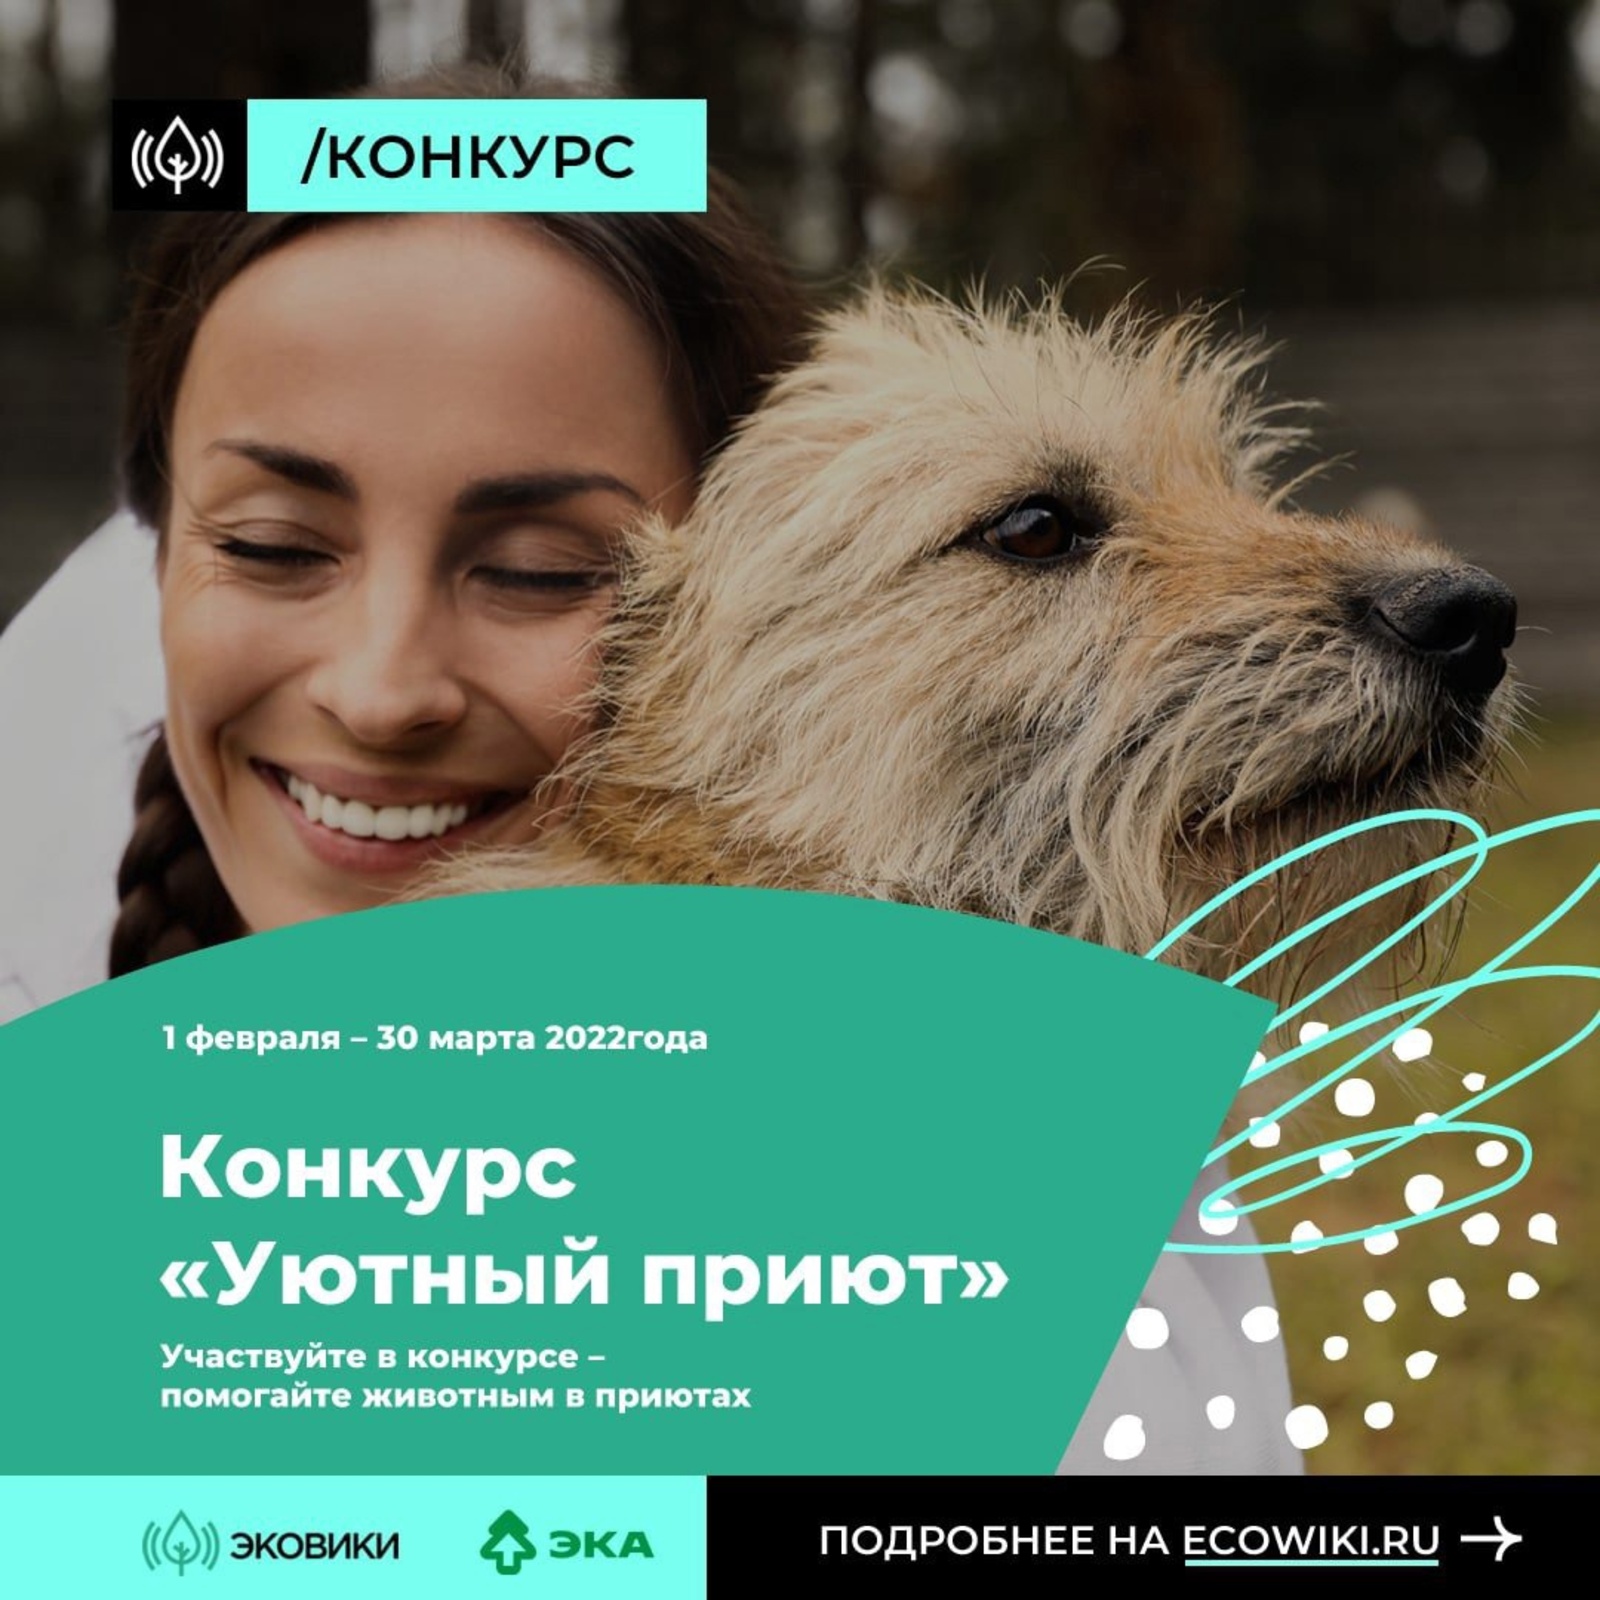 В Башкирии стартовал конкурс «Уютный приют», который проводится для того, чтобы помочь бездомным животным!